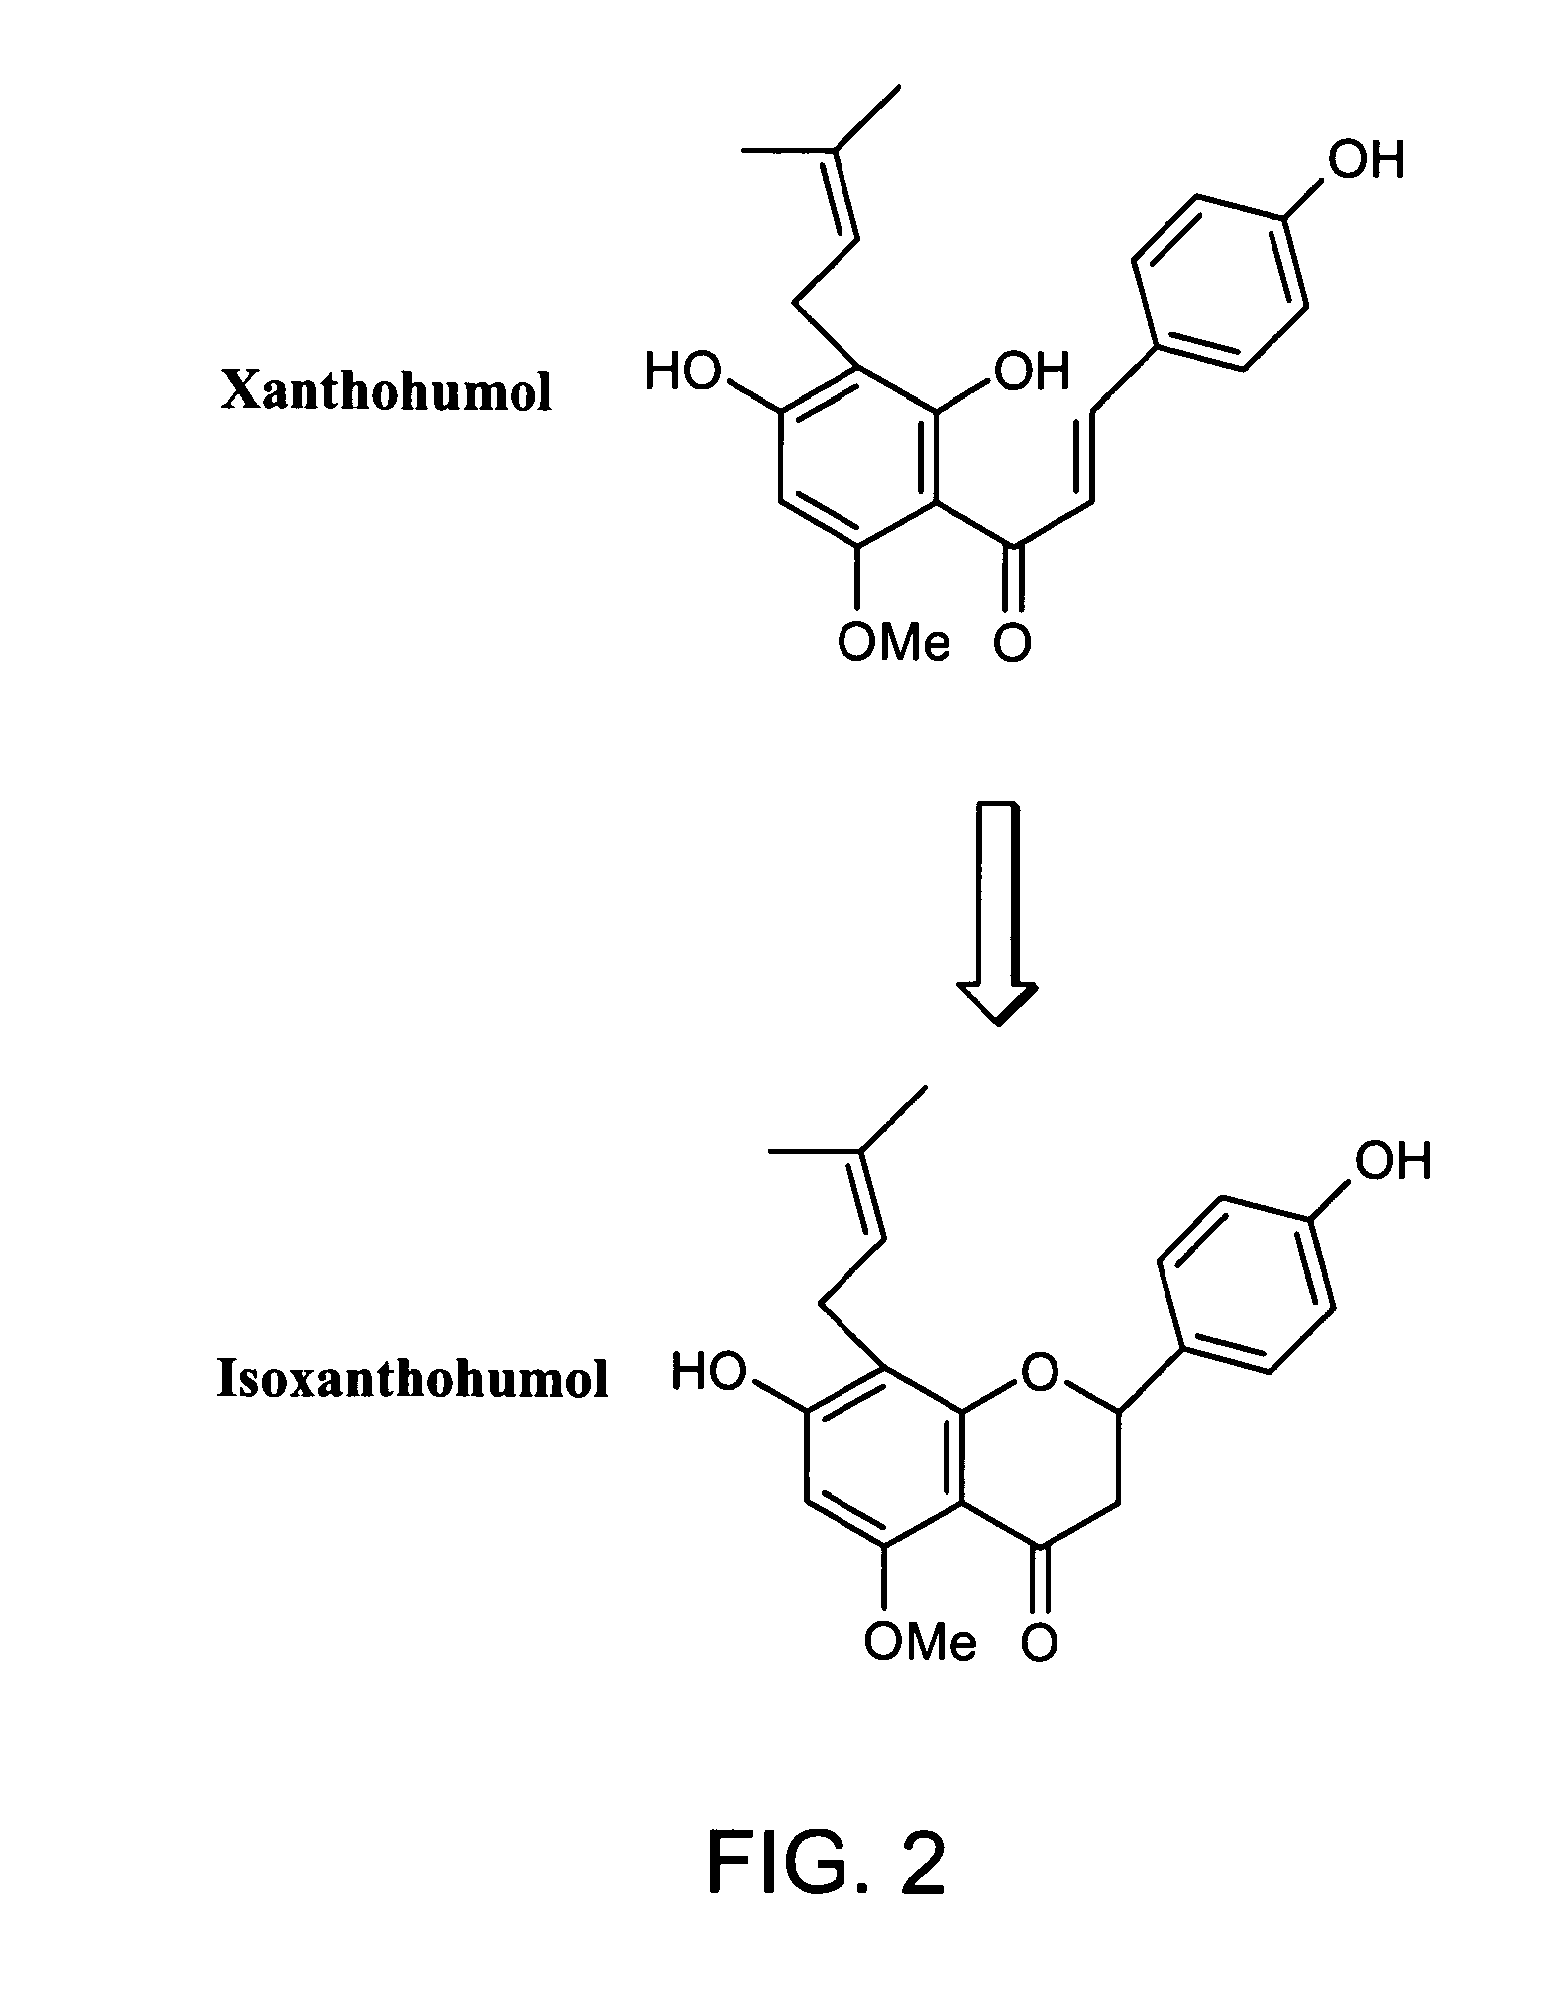 Compositions containing xanthohumol-cyclodextrin complexes